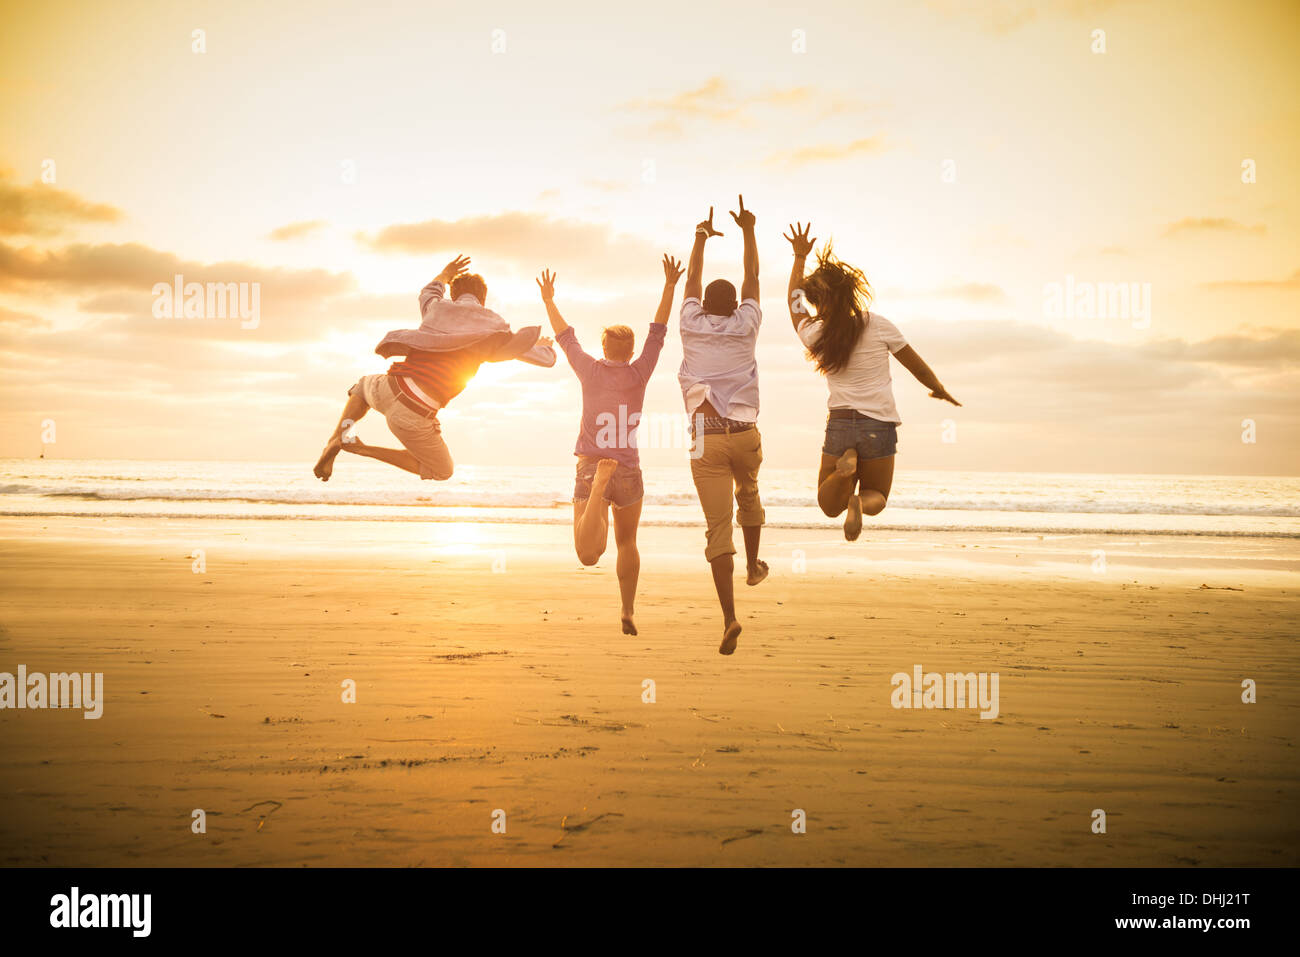 Junge Menschen springen auf Mission Beach, San Diego, Kalifornien, USA Stockfoto